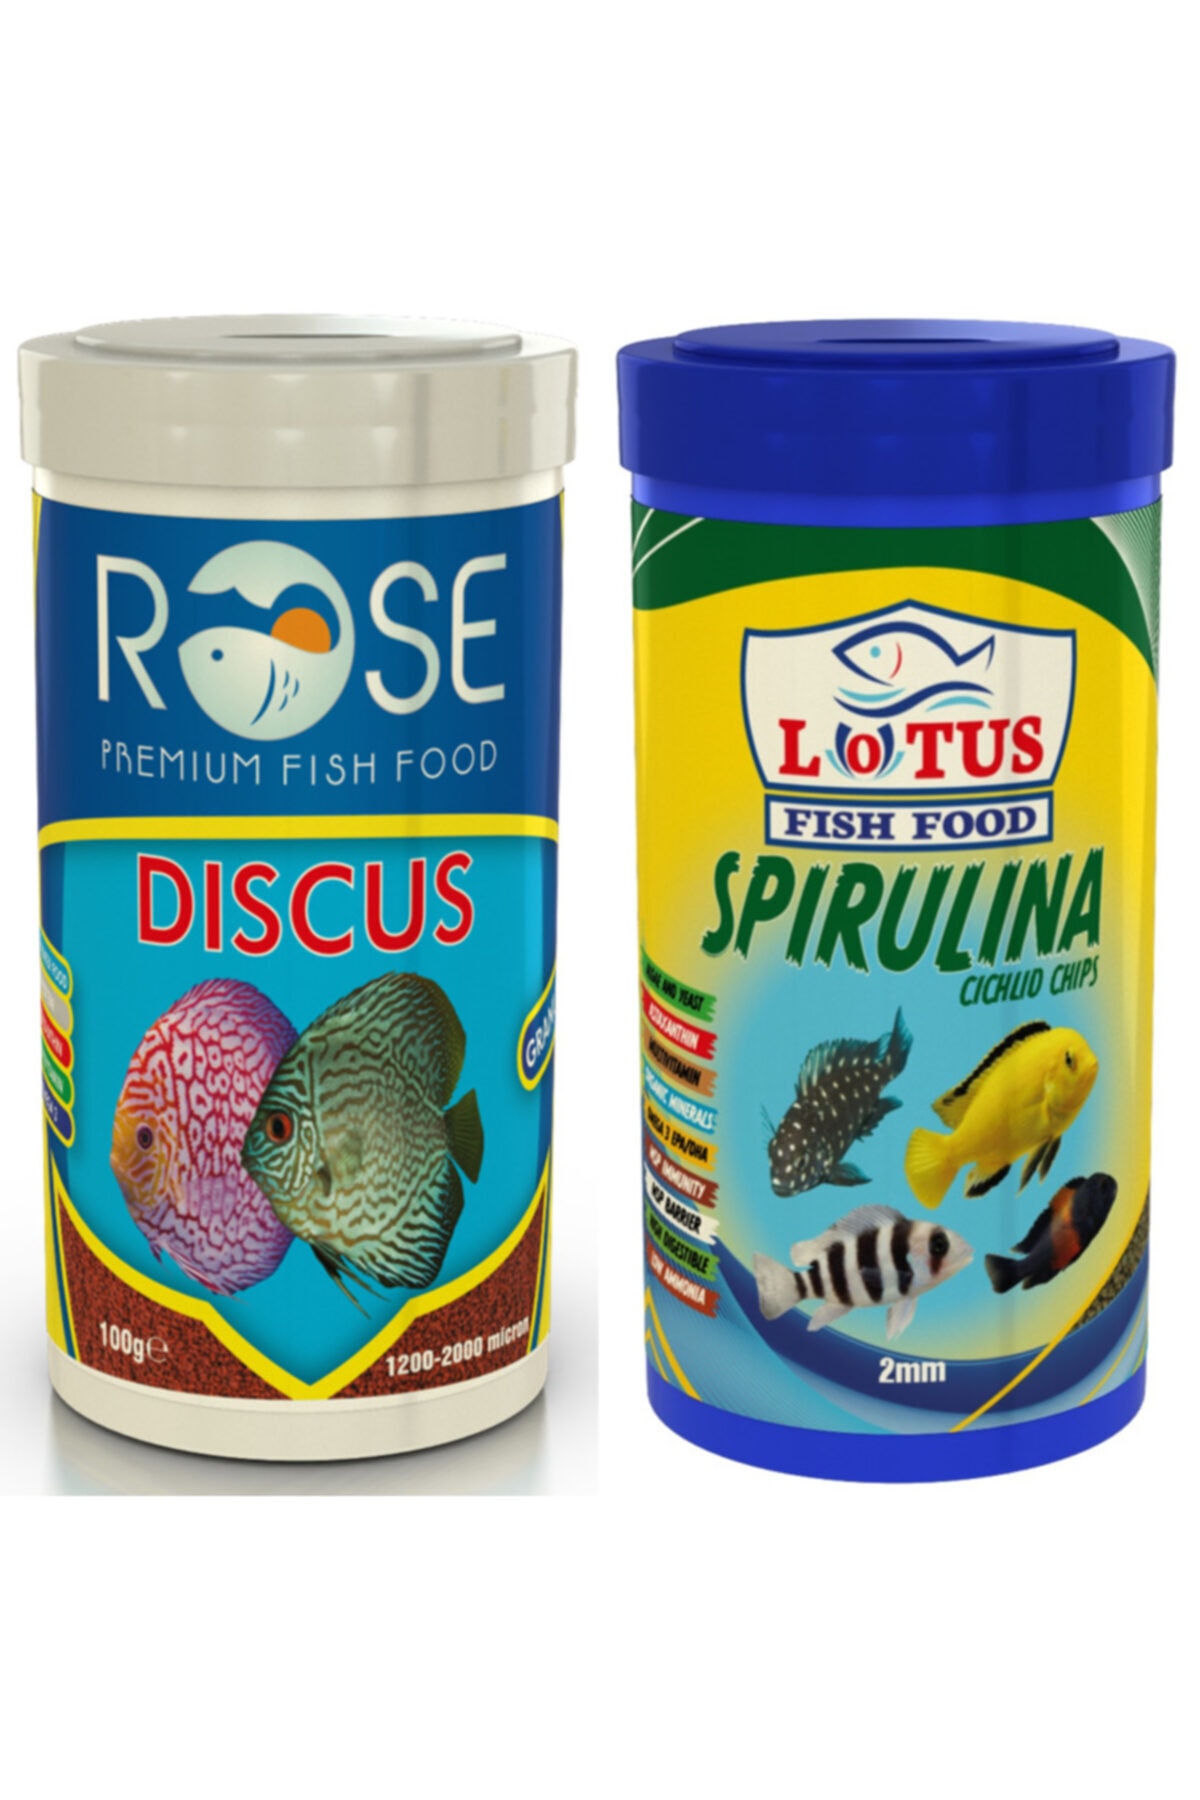 Lotus Spirulina Chips 250 Ml Ve Rose Discus 250 Ml Balık Yemi